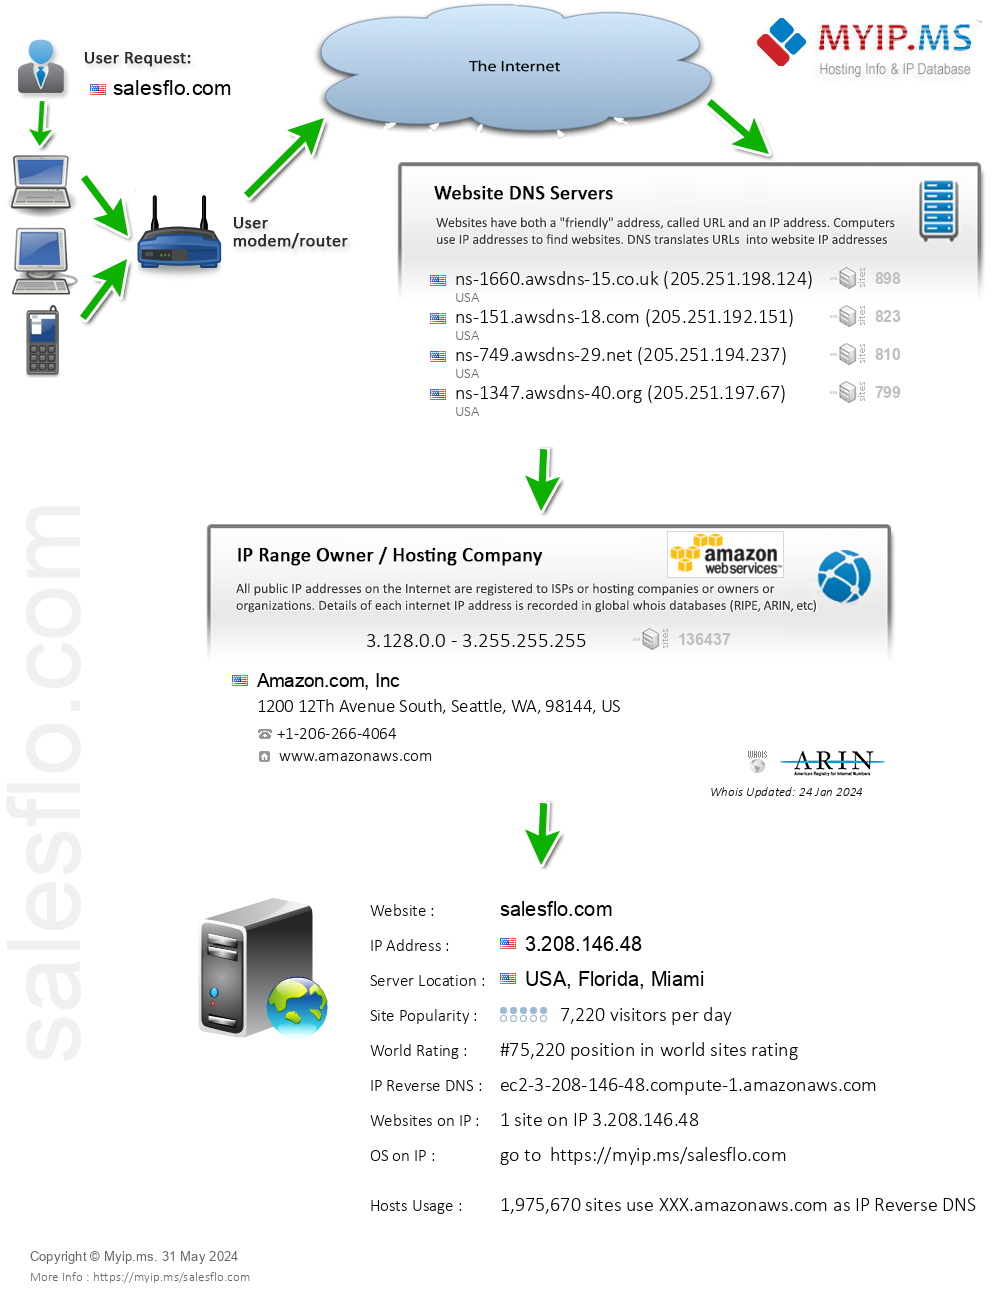 Salesflo.com - Website Hosting Visual IP Diagram